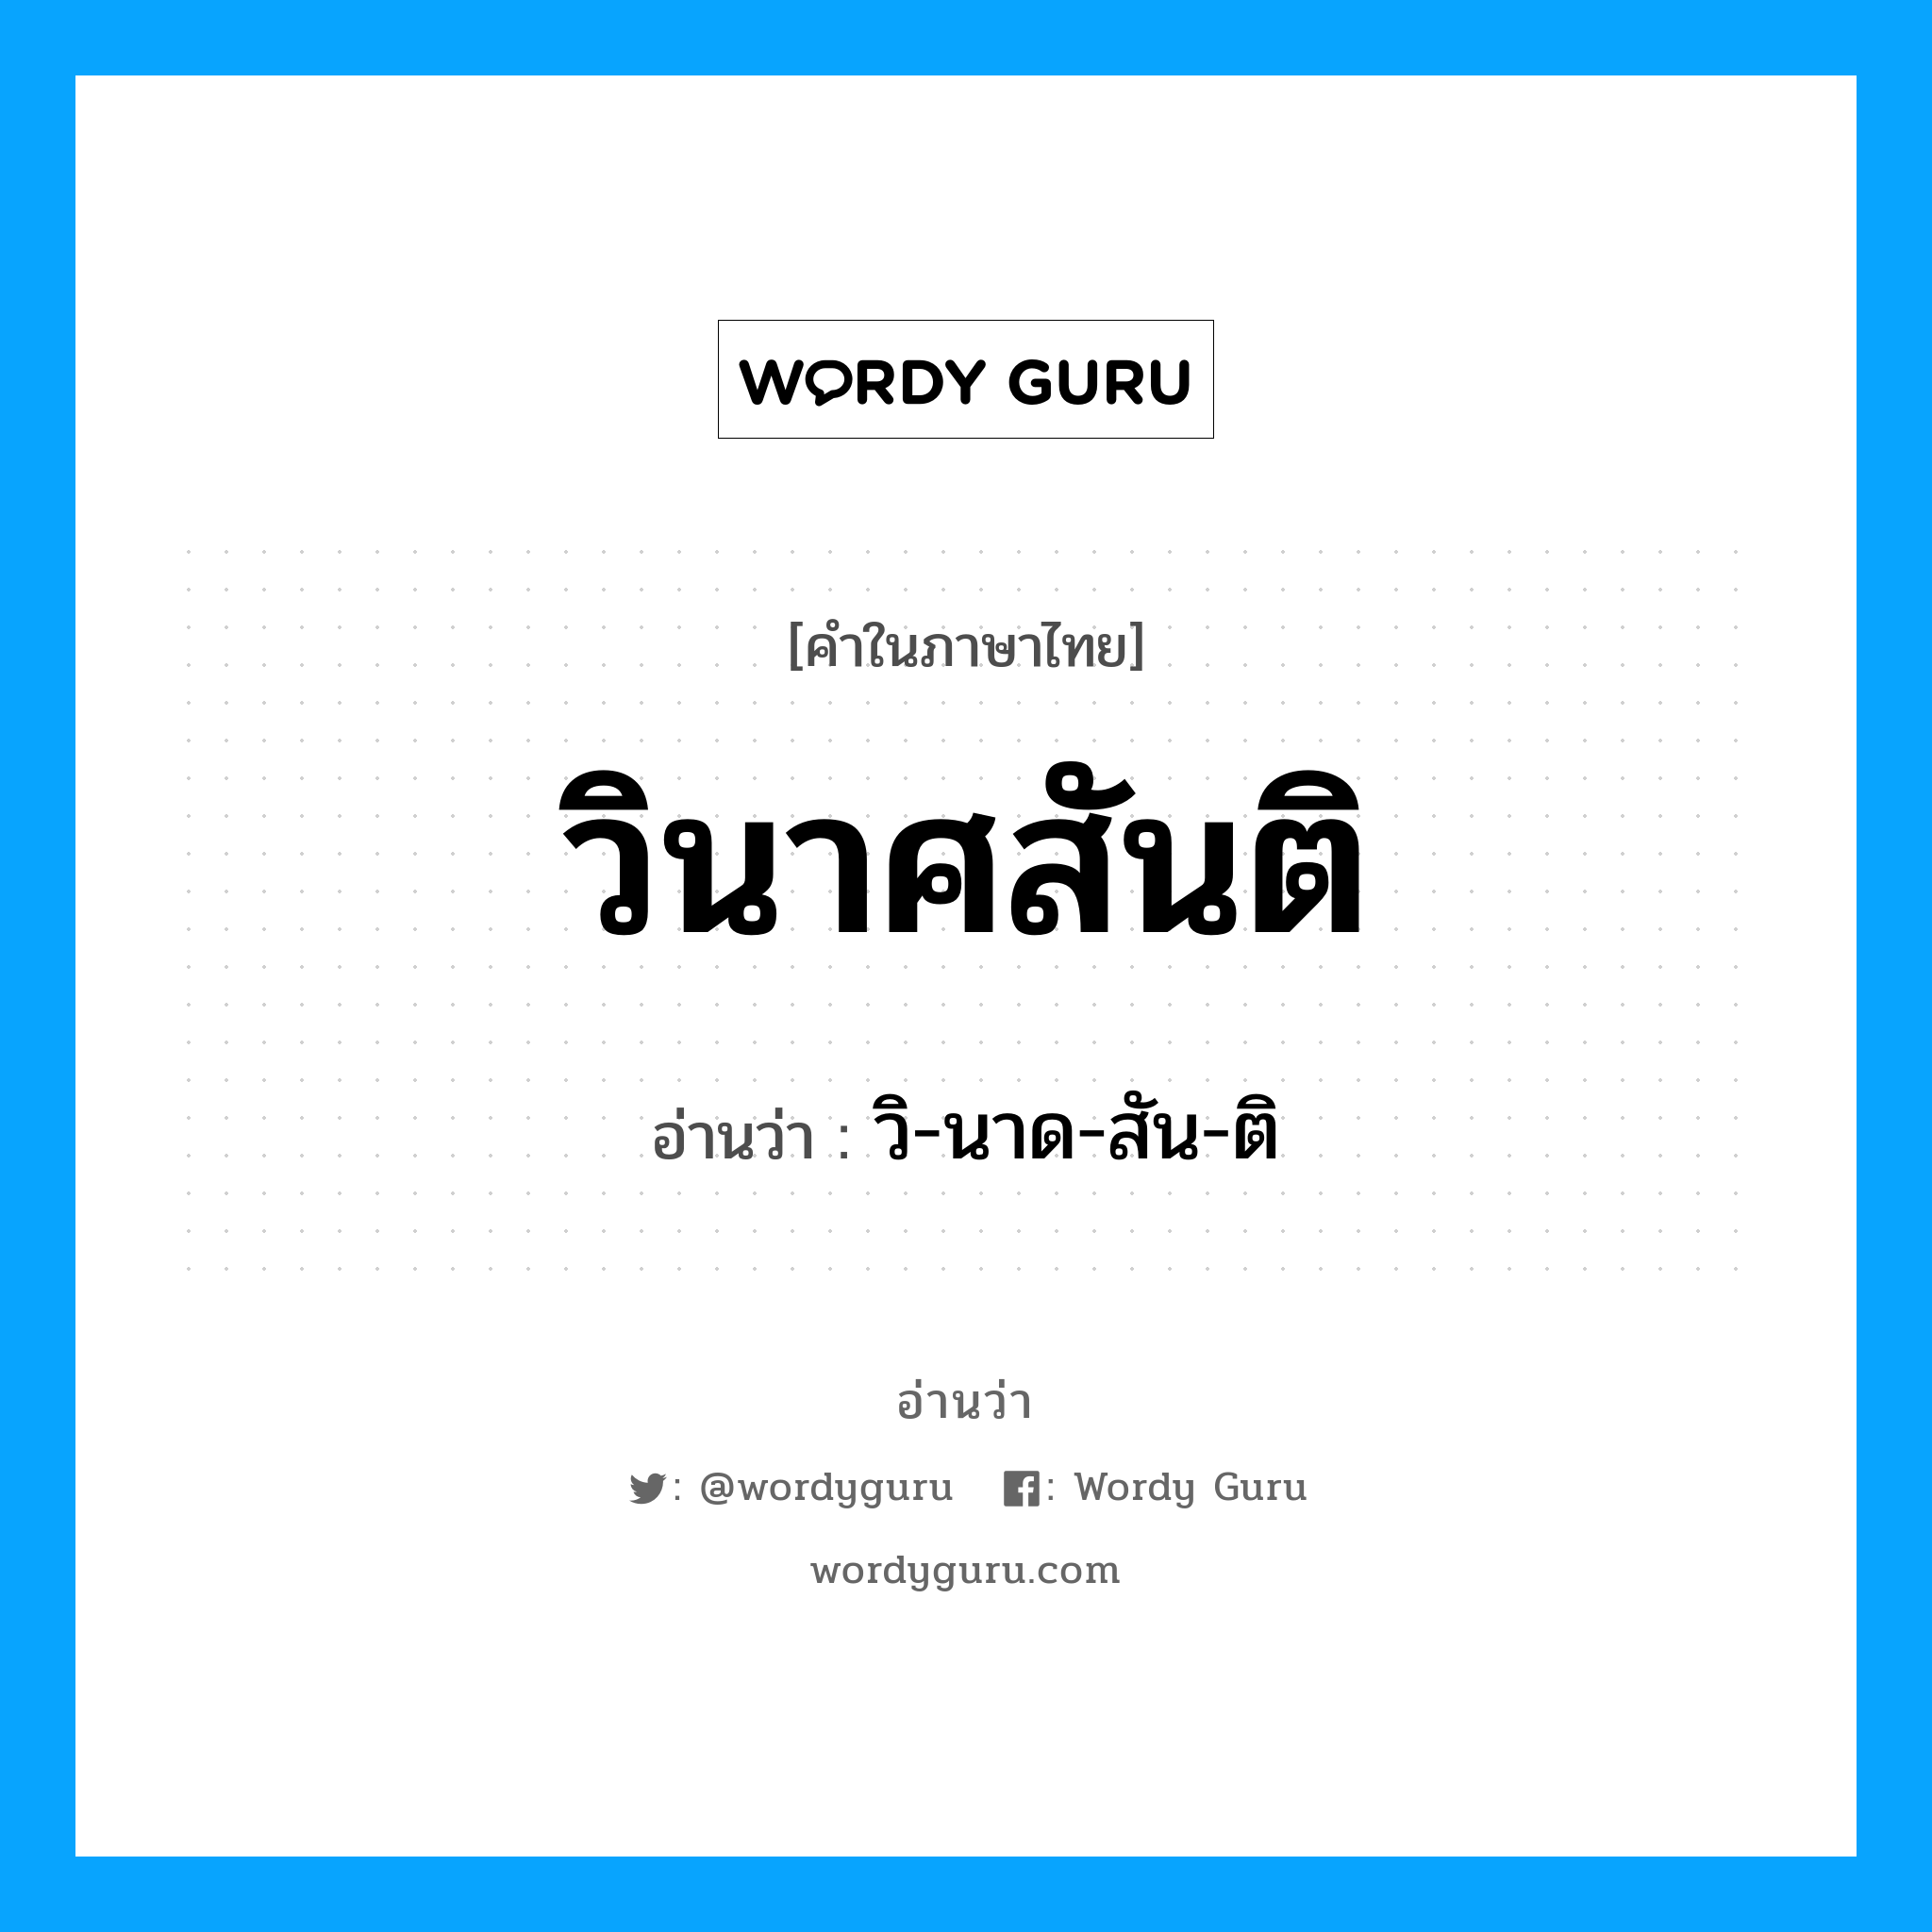 วิ-นาด-สัน-ติ เป็นคำอ่านของคำไหน?, คำในภาษาไทย วิ-นาด-สัน-ติ อ่านว่า วินาศสันติ